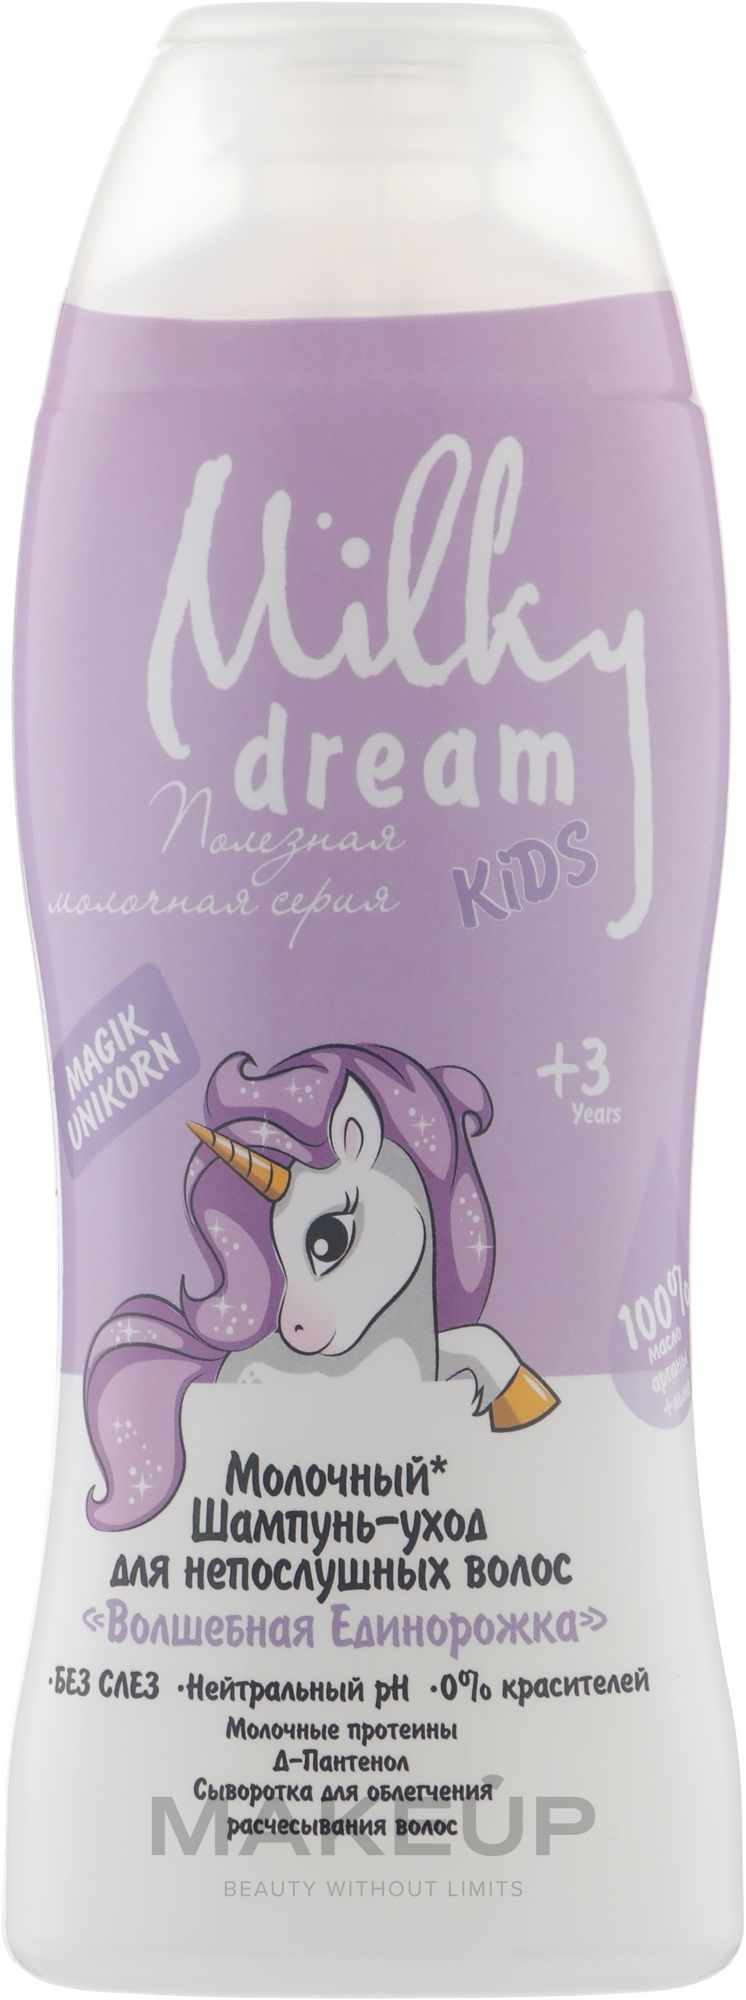 Шампунь-уход для непослушных волос "Волшебная Единорожка" - Milky Dream Kids — фото 300ml